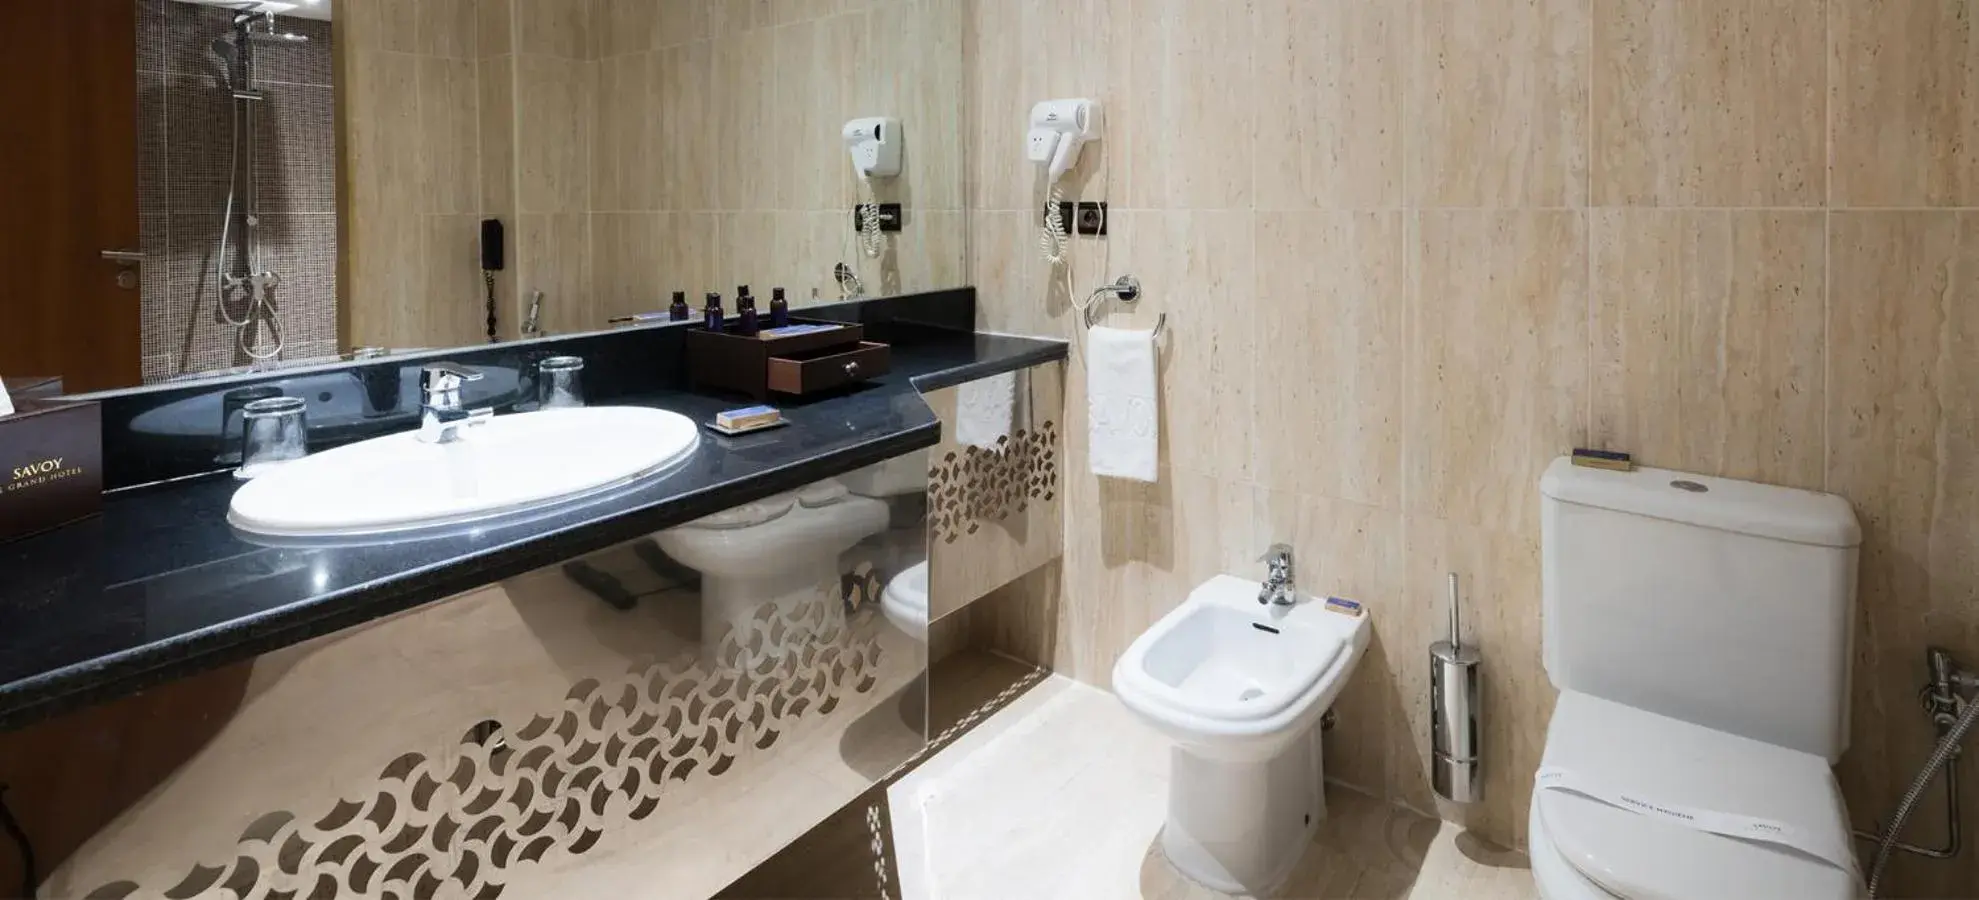 Toilet, Bathroom in Savoy Le Grand Hotel Marrakech